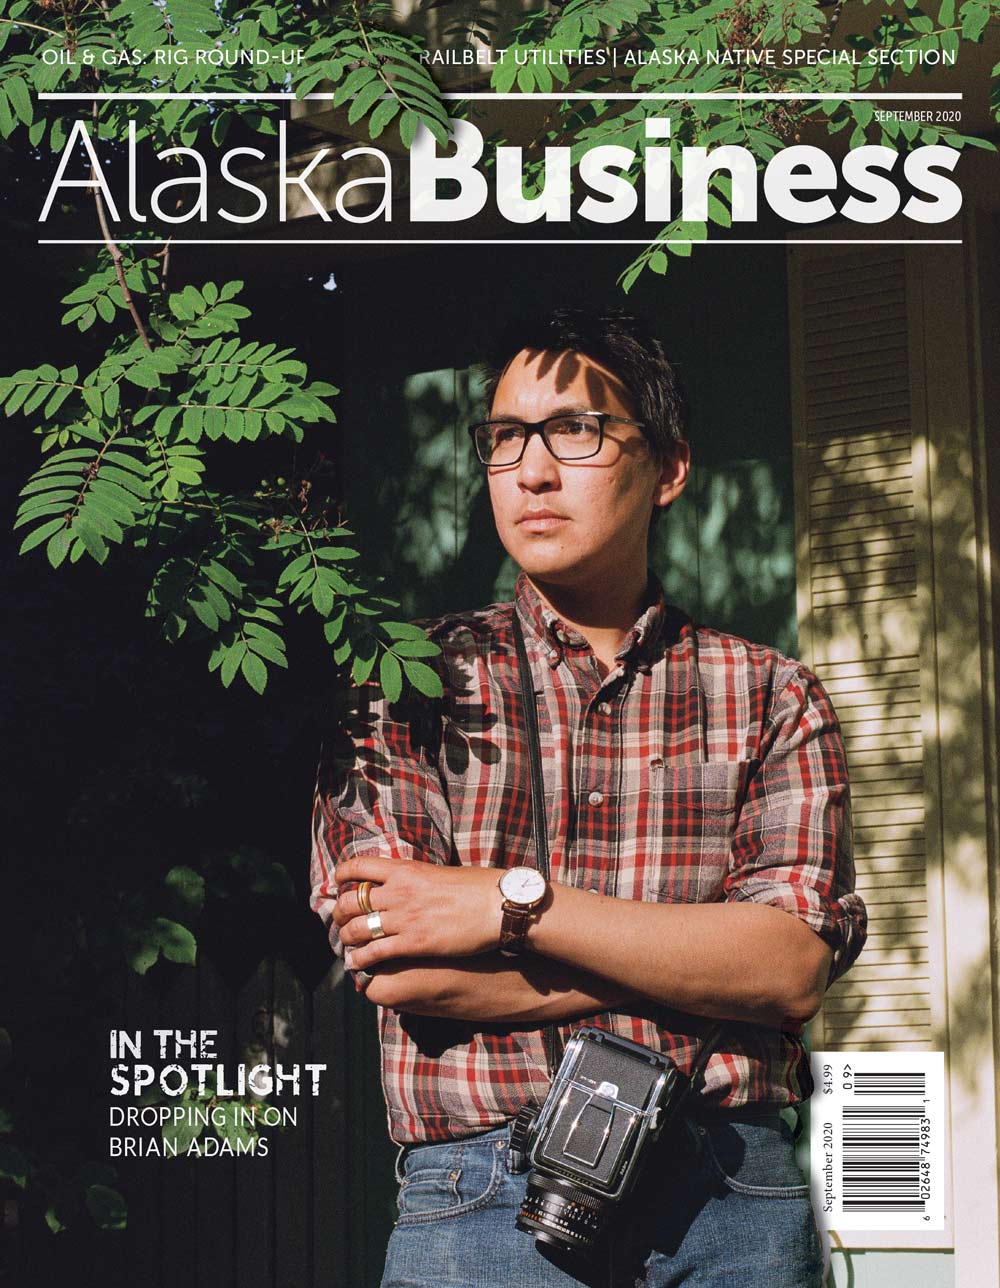 Alaska Business Magazine September 2020 Cover